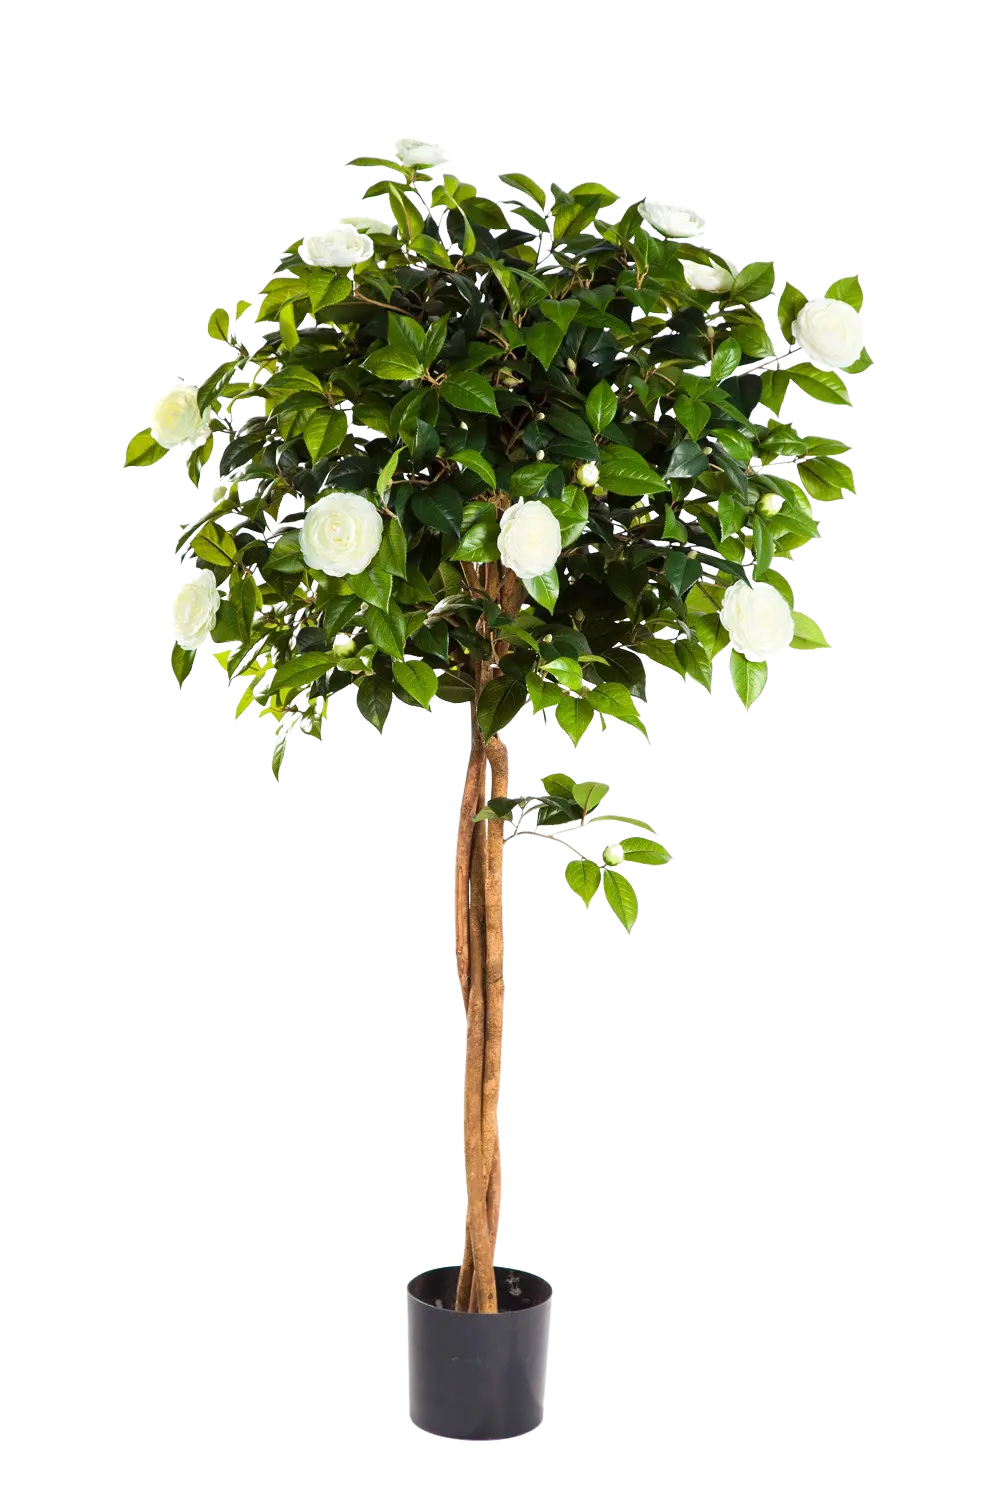 Künstlicher Kamelienbaum - Pina auf transparentem Hintergrund mit echt wirkenden Kunstblättern. Diese Kunstpflanze gehört zur Gattung/Familie der "Kamelien" bzw. "Kunst-Kamelien".